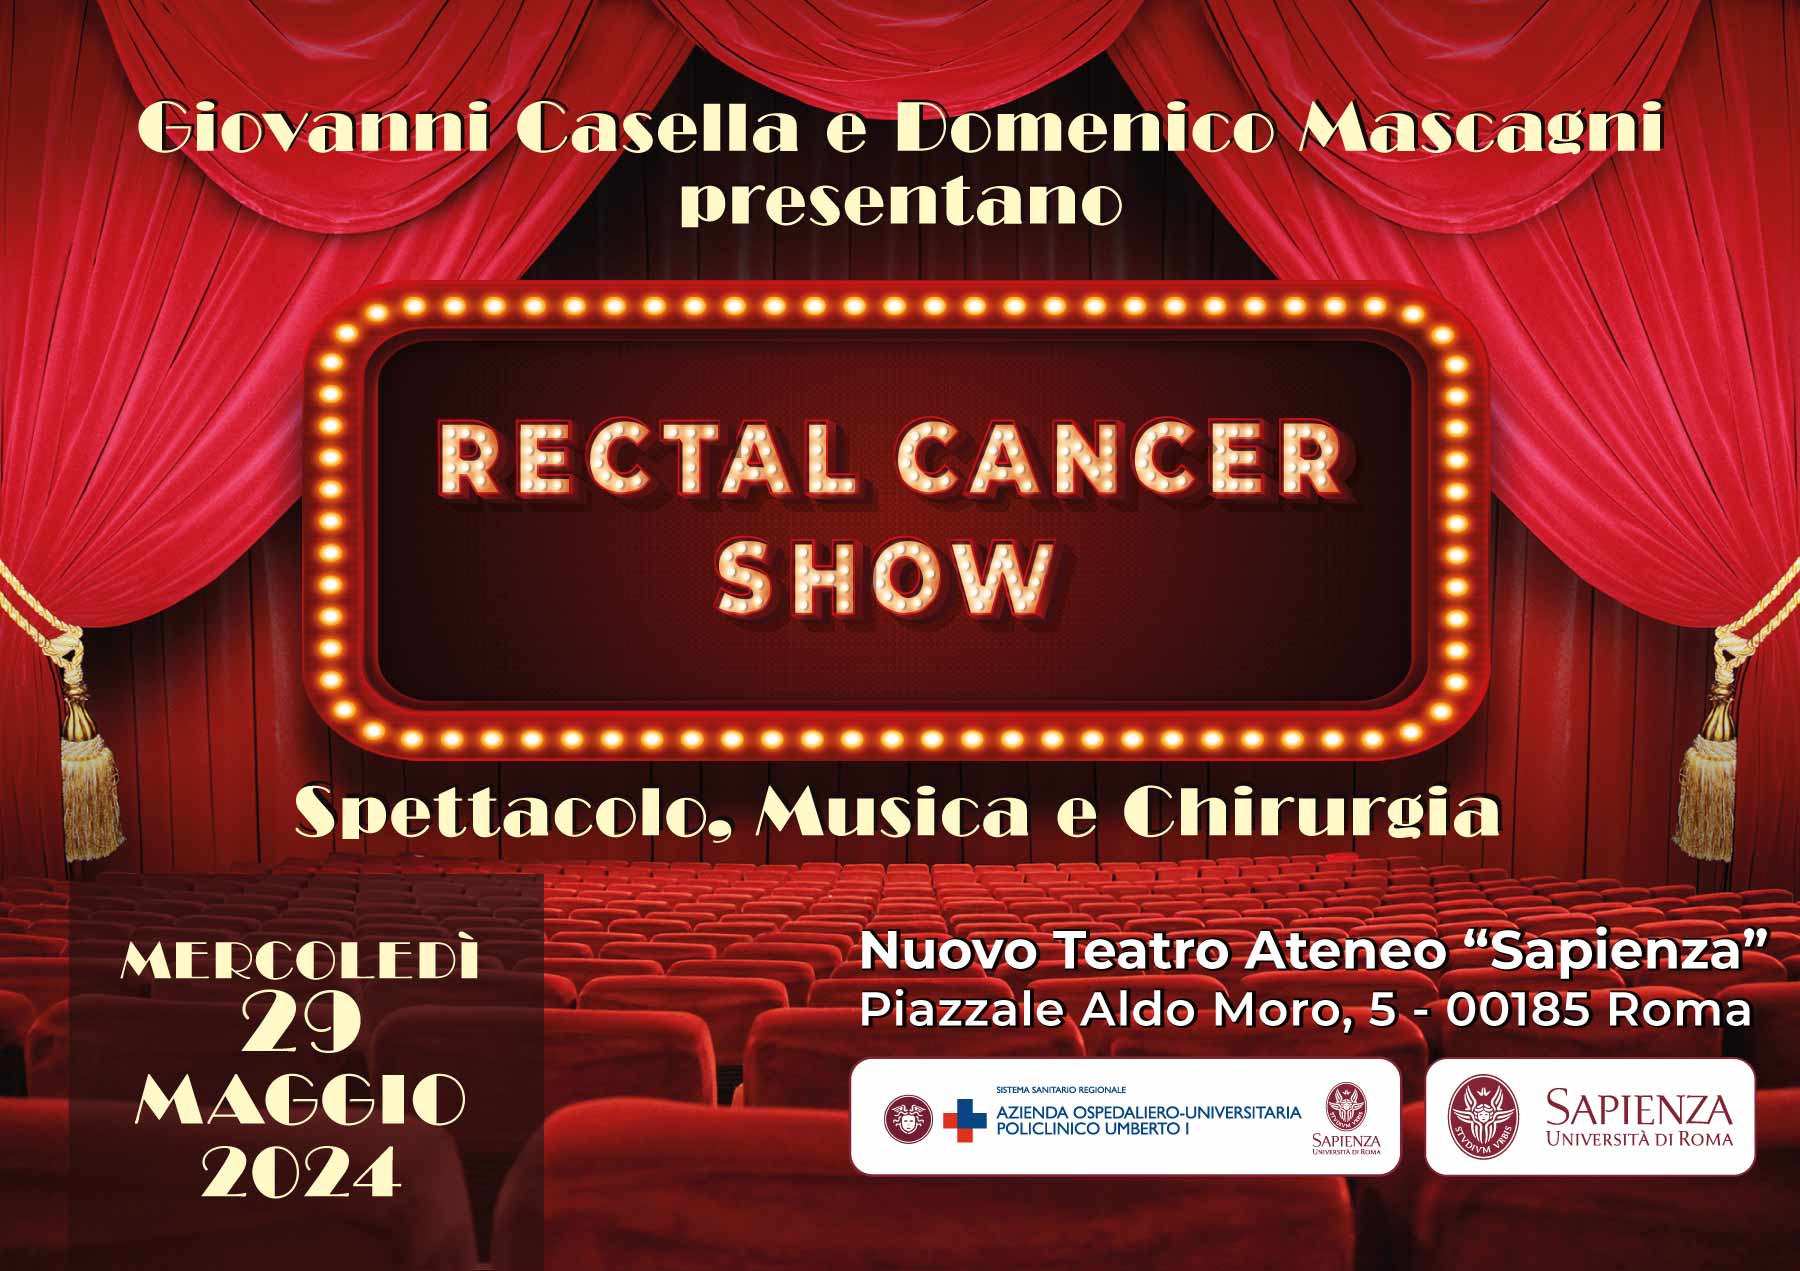 Rectal Cancer Show - Spettacolo, Musica e Chirurgia